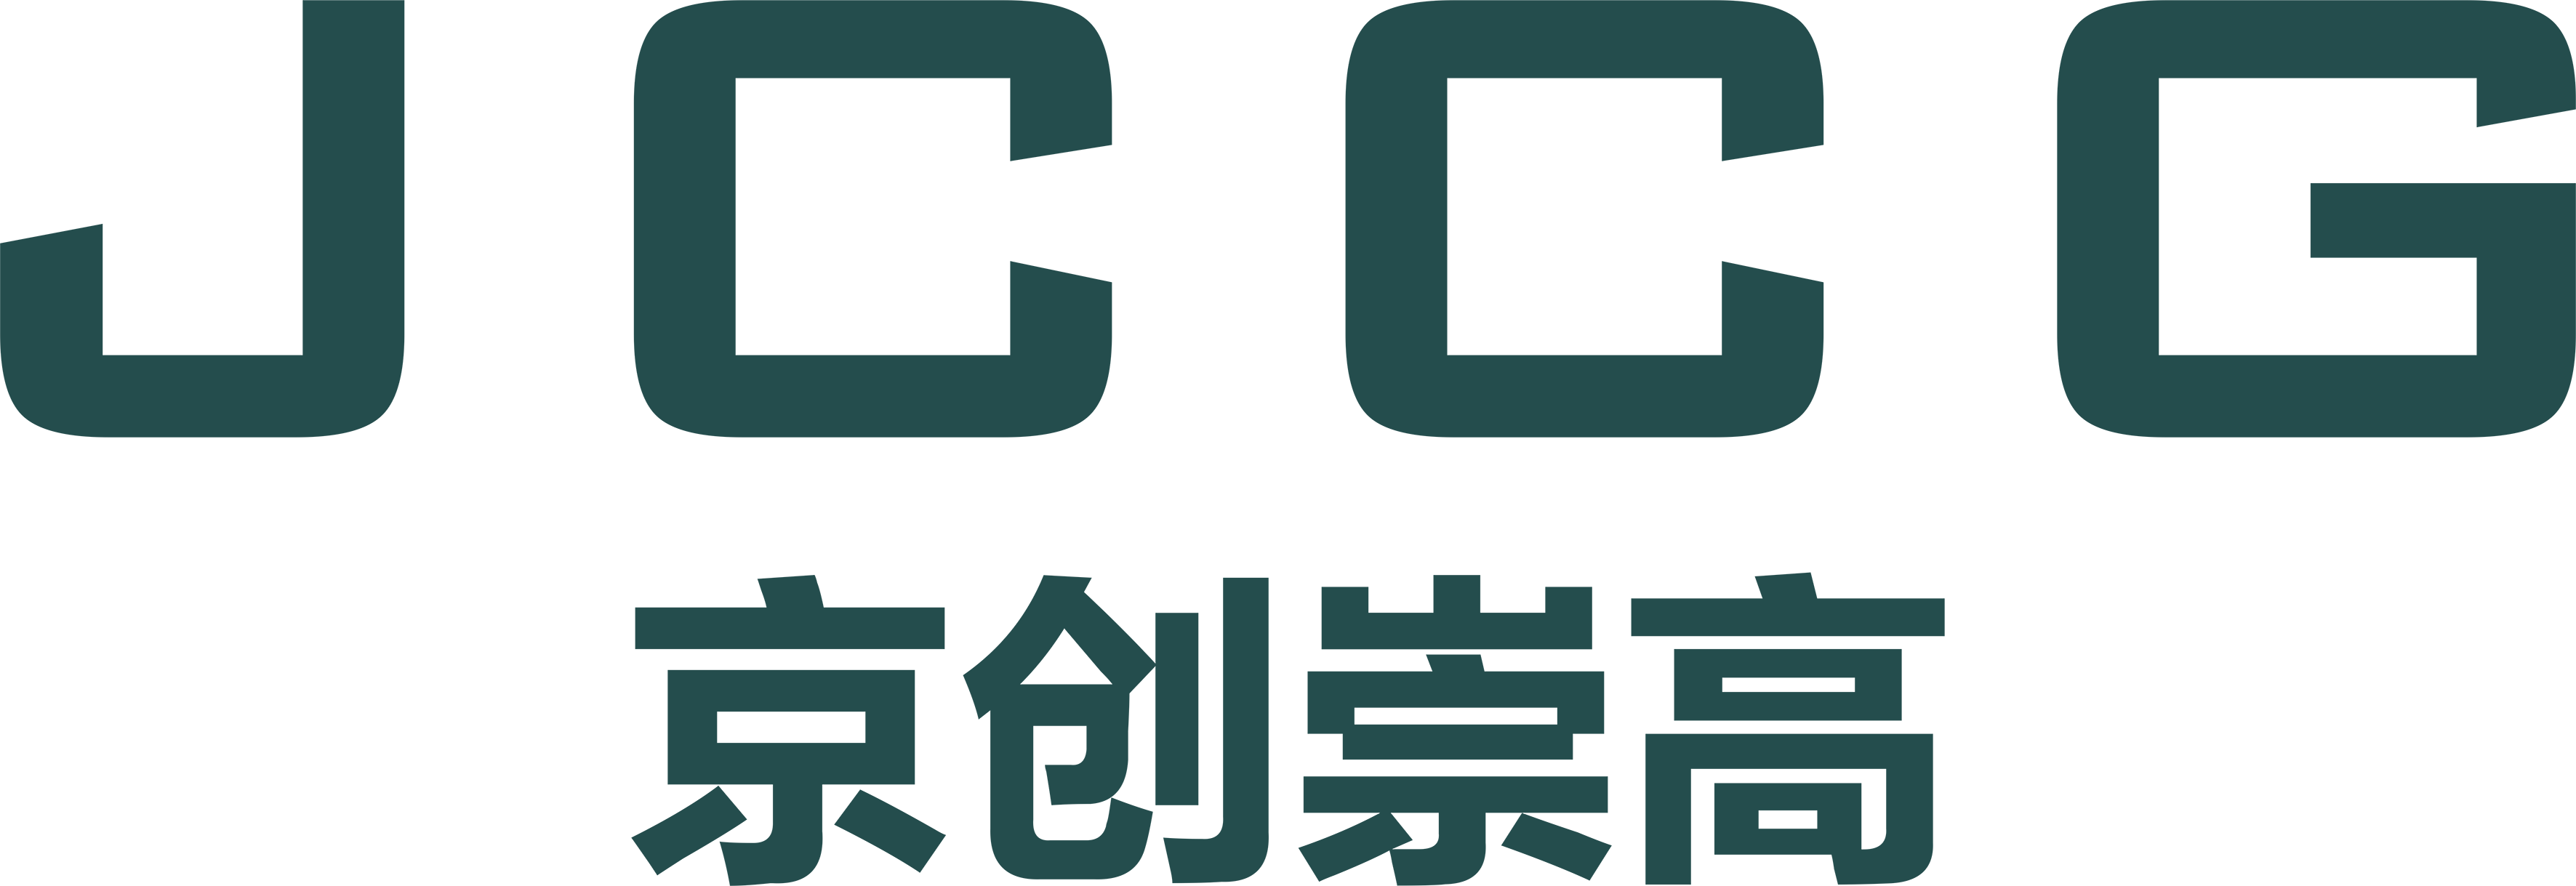 武漢k8s经典网址有限公司品牌Logo